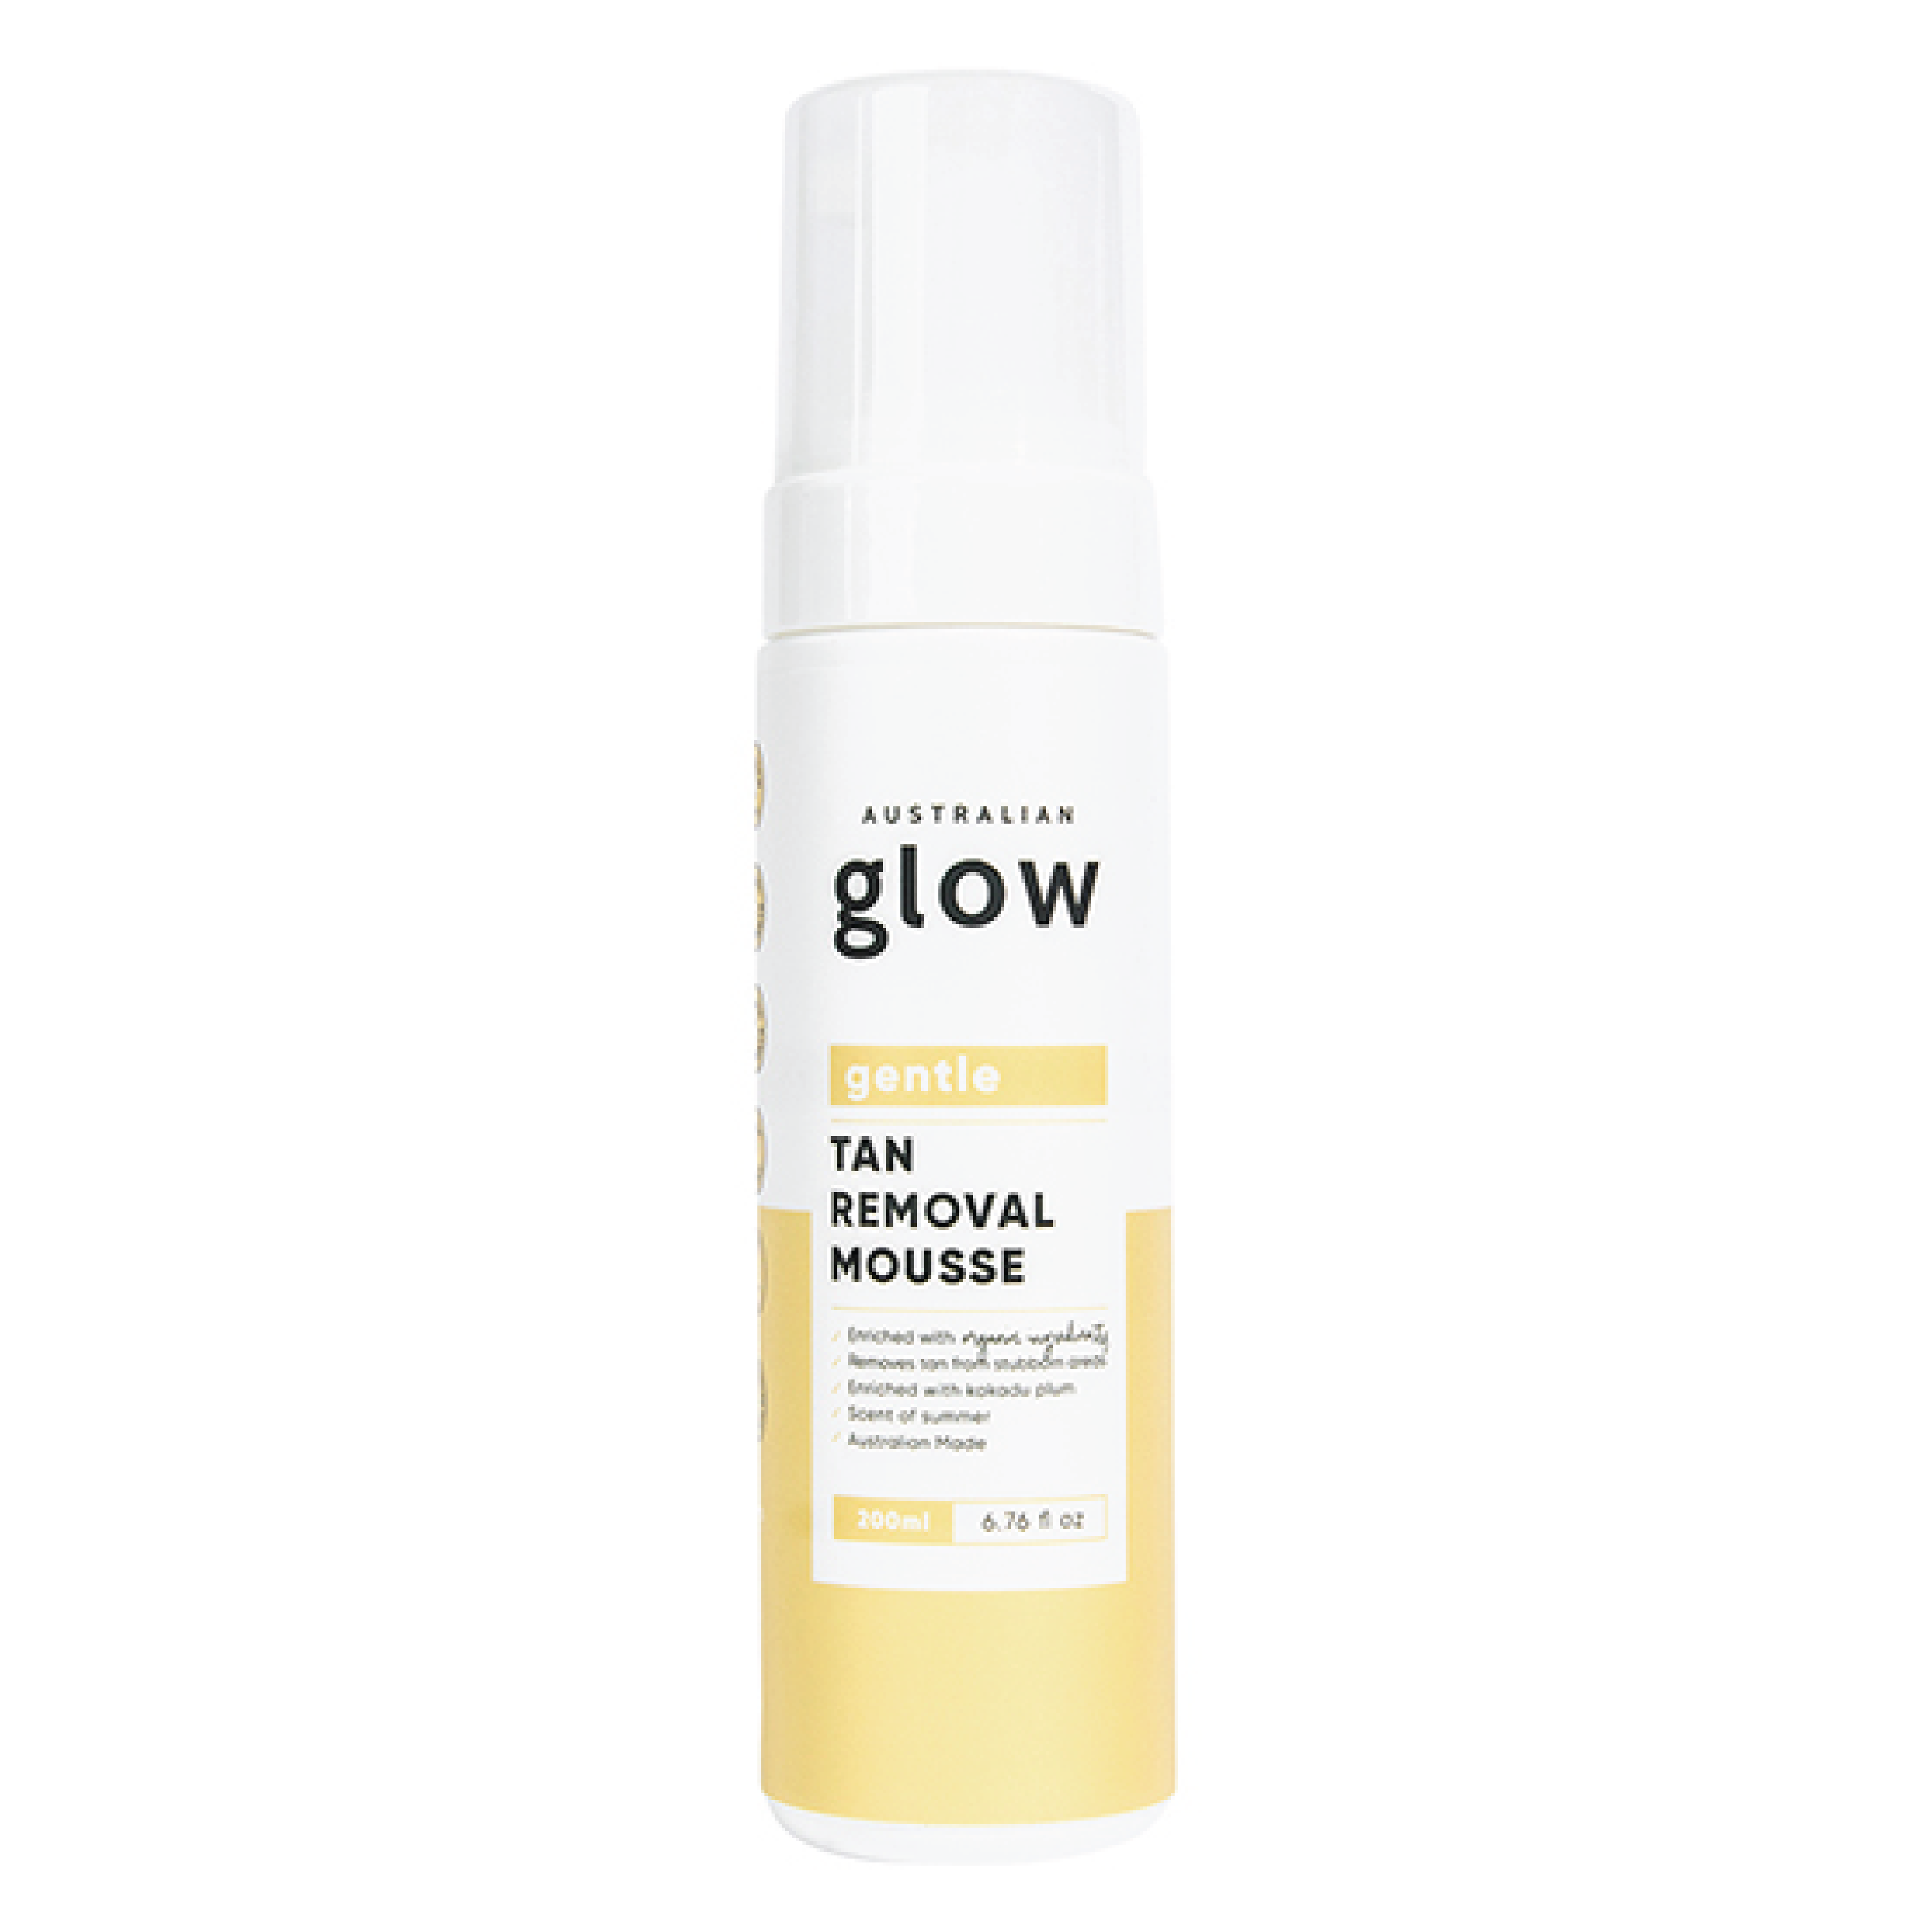 Australian Glow Gentle Tan Removal Mousse, 200 ml